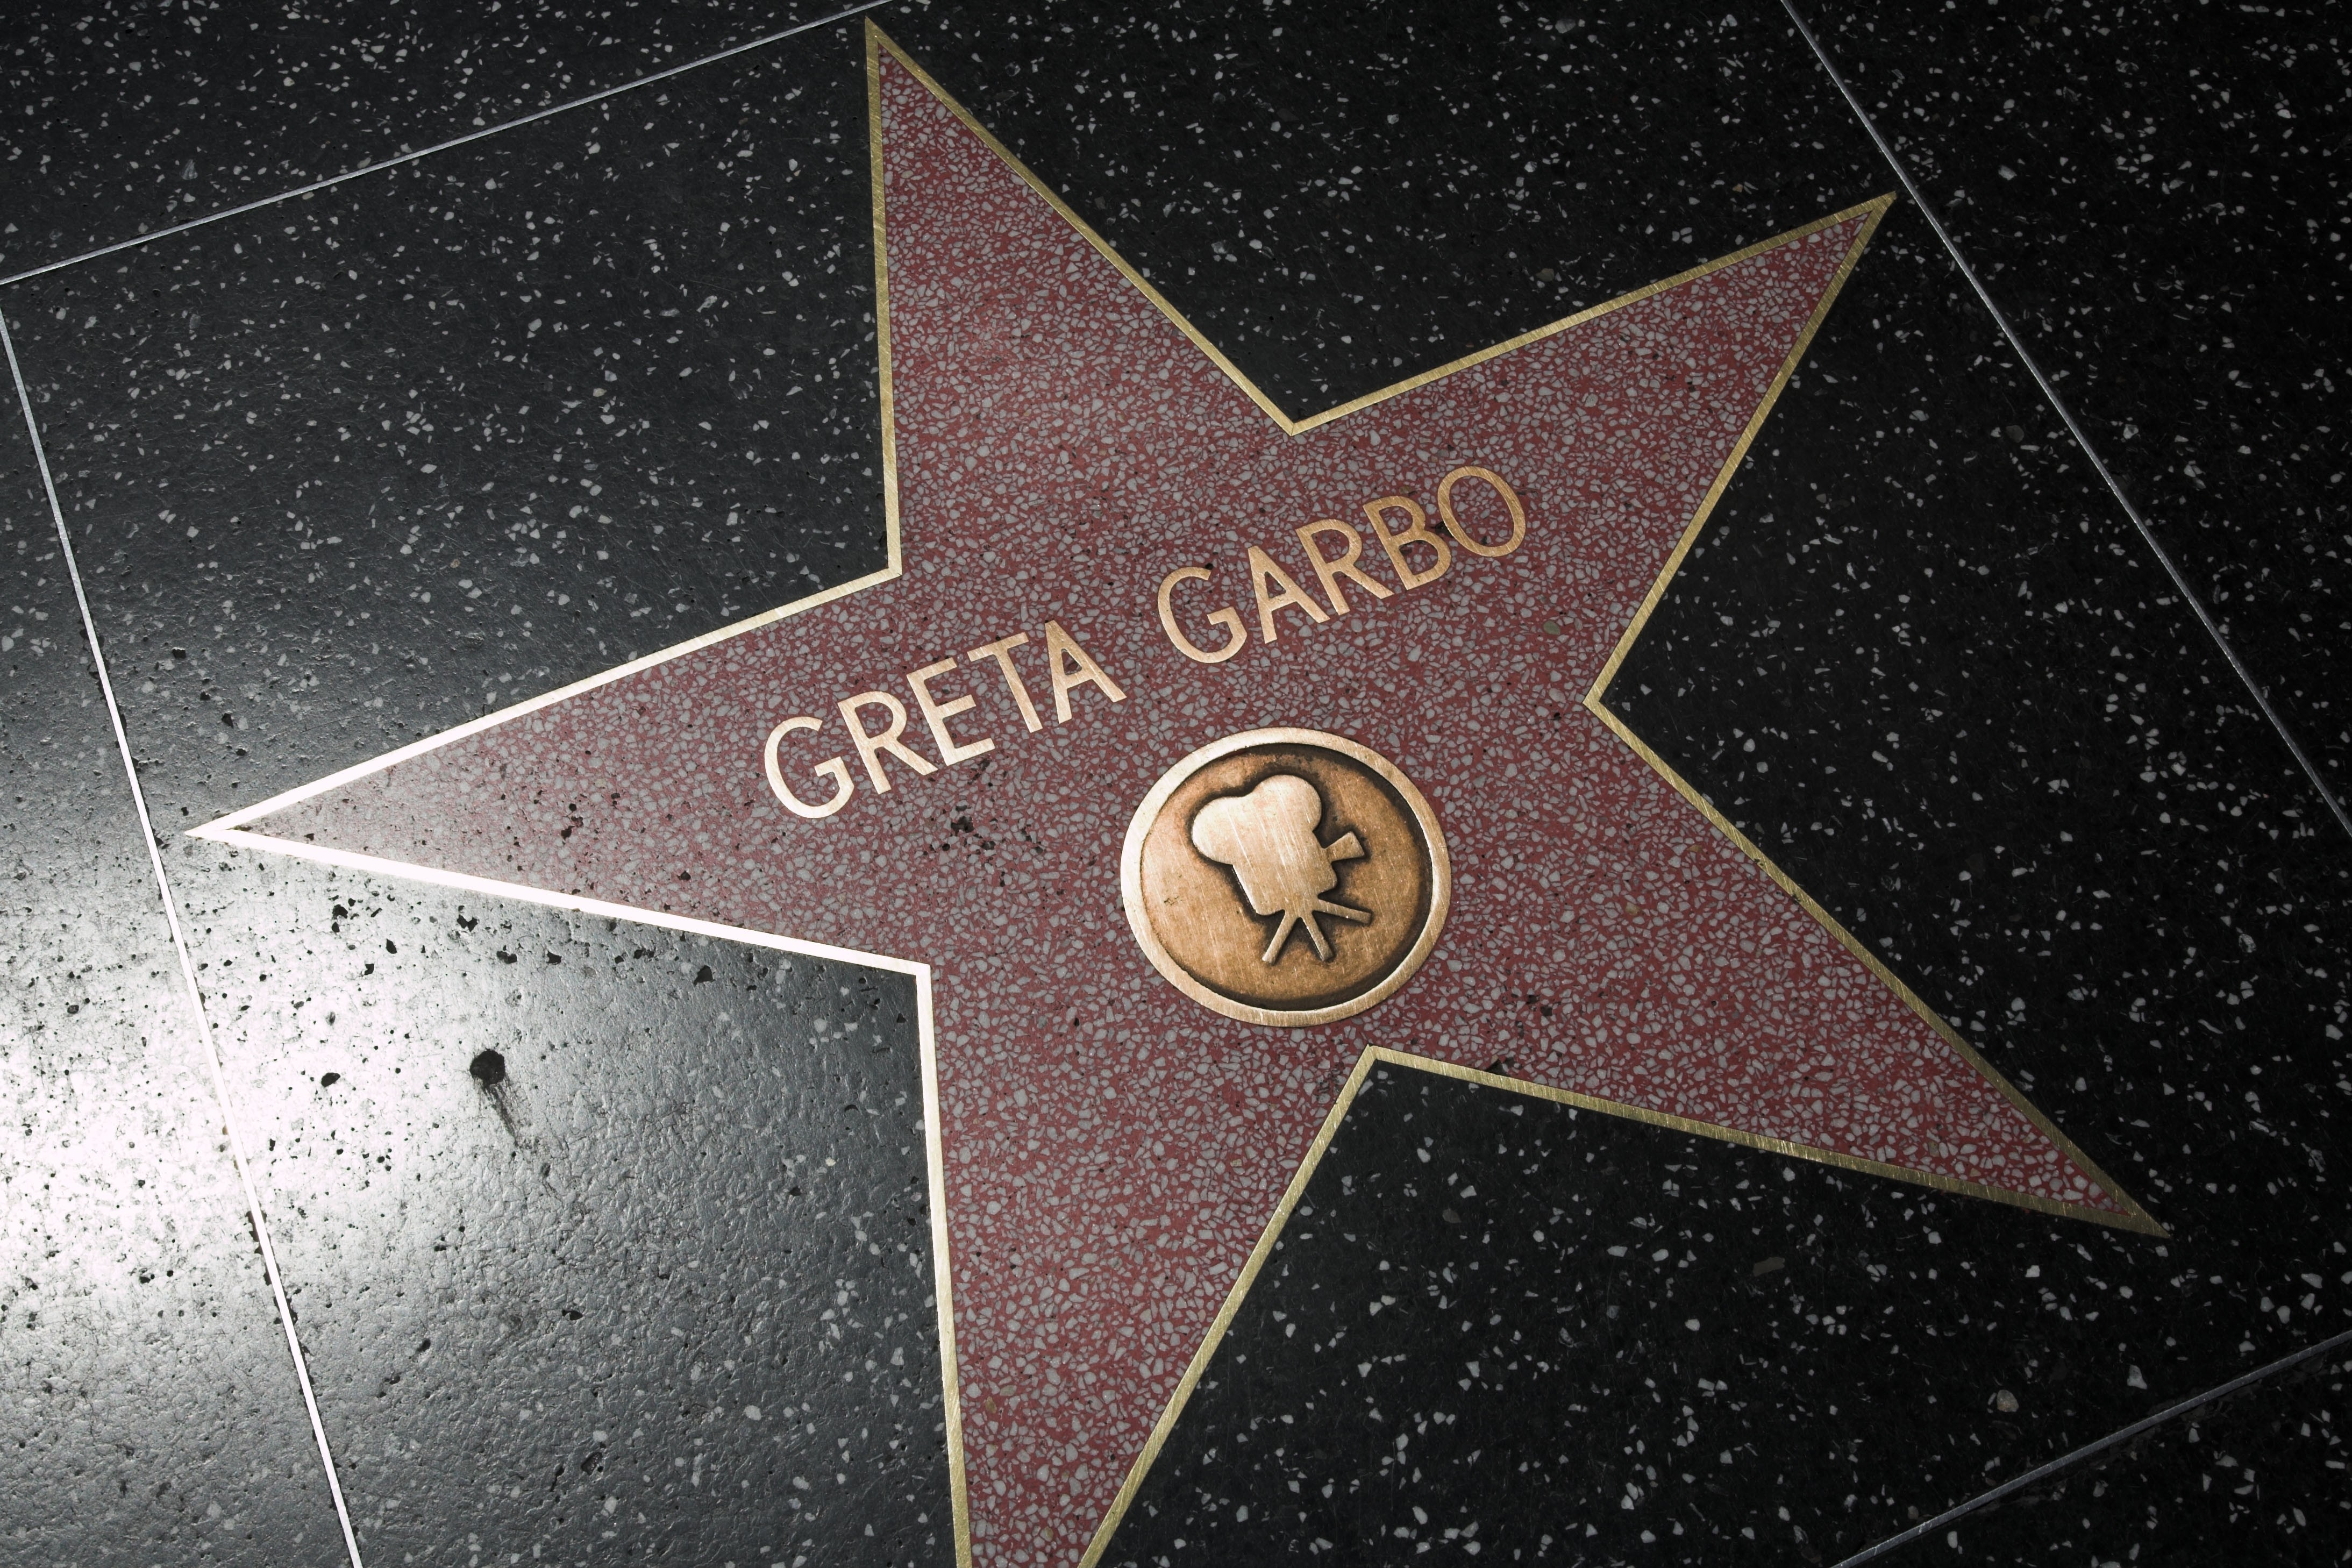 La stella della Garbo brilla sulla Walk of Fame